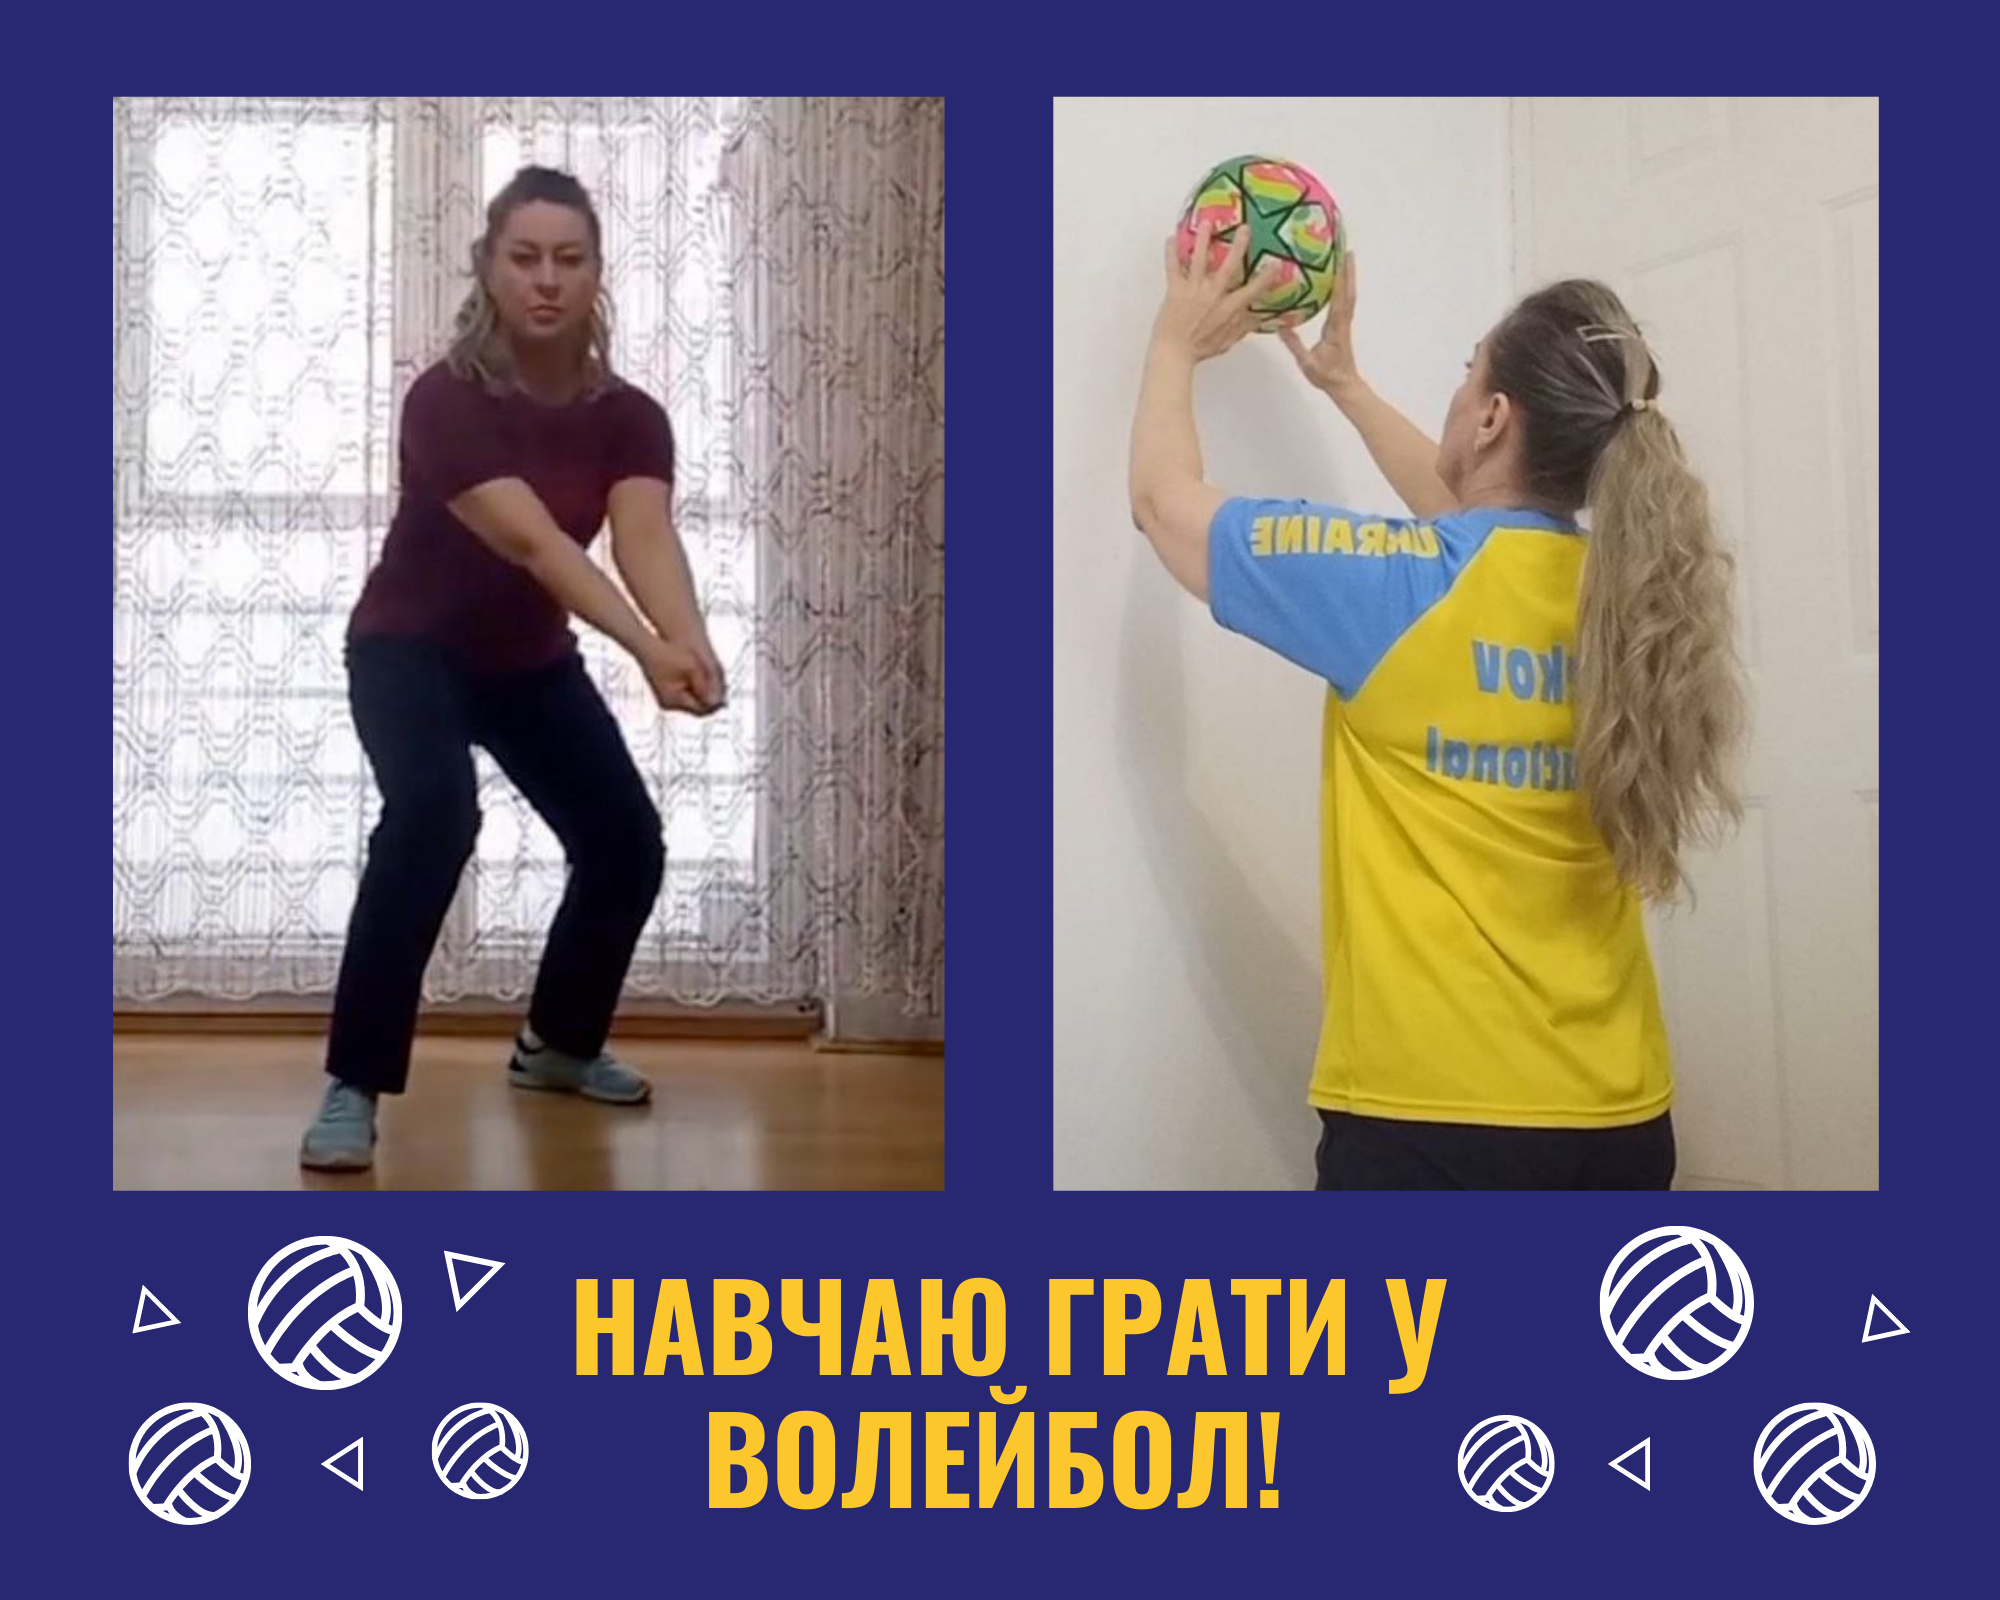 ІІ місце Волейбол: передачі м’яча (Черновол Ганна Миколаївна, ХЛ № 102)